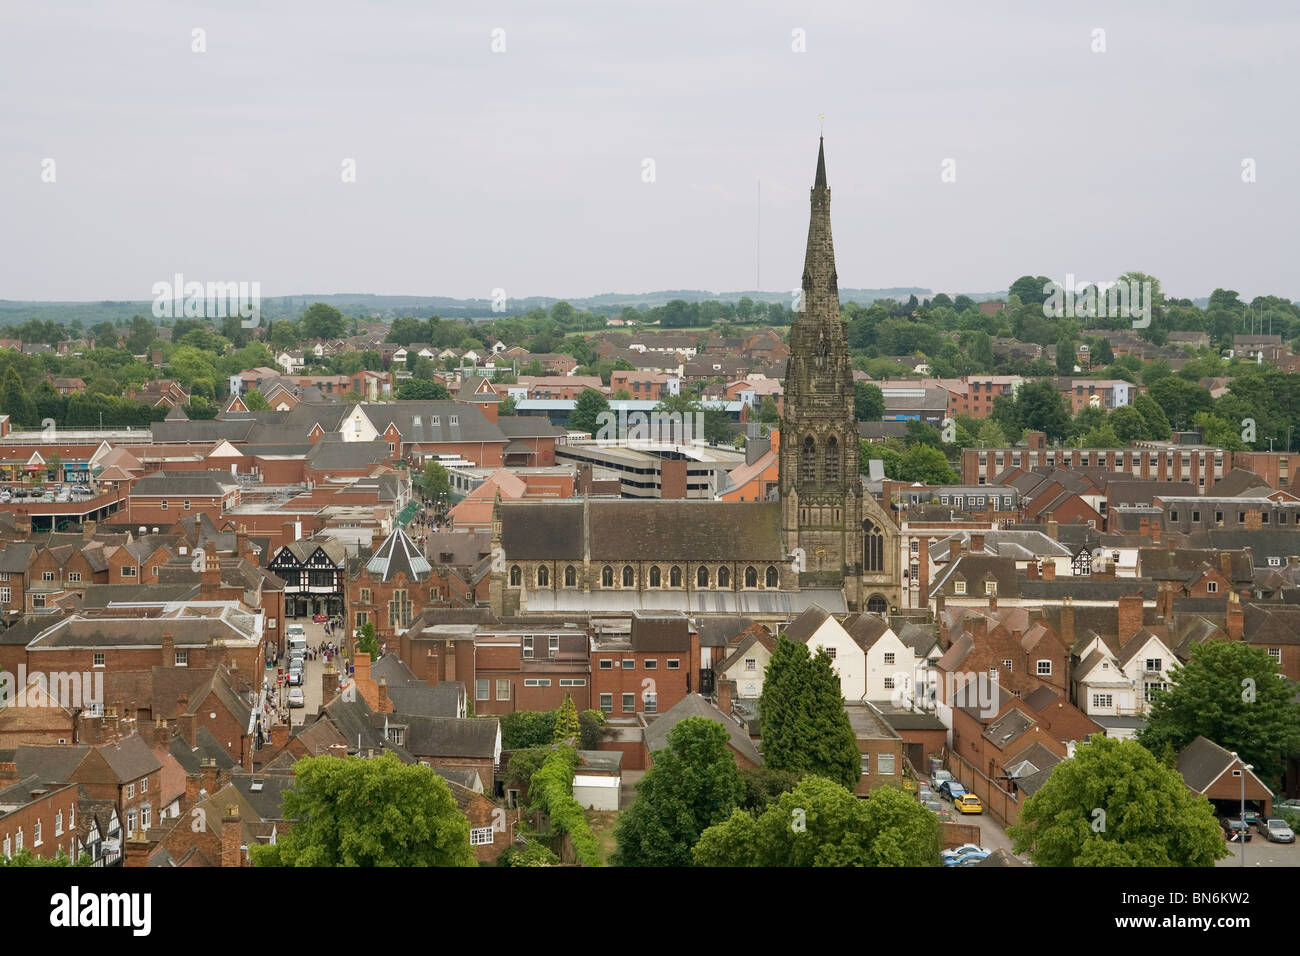 Blick auf die Stadt vom Turm der Kathedrale England Staffordshire Lichfield Stockfoto